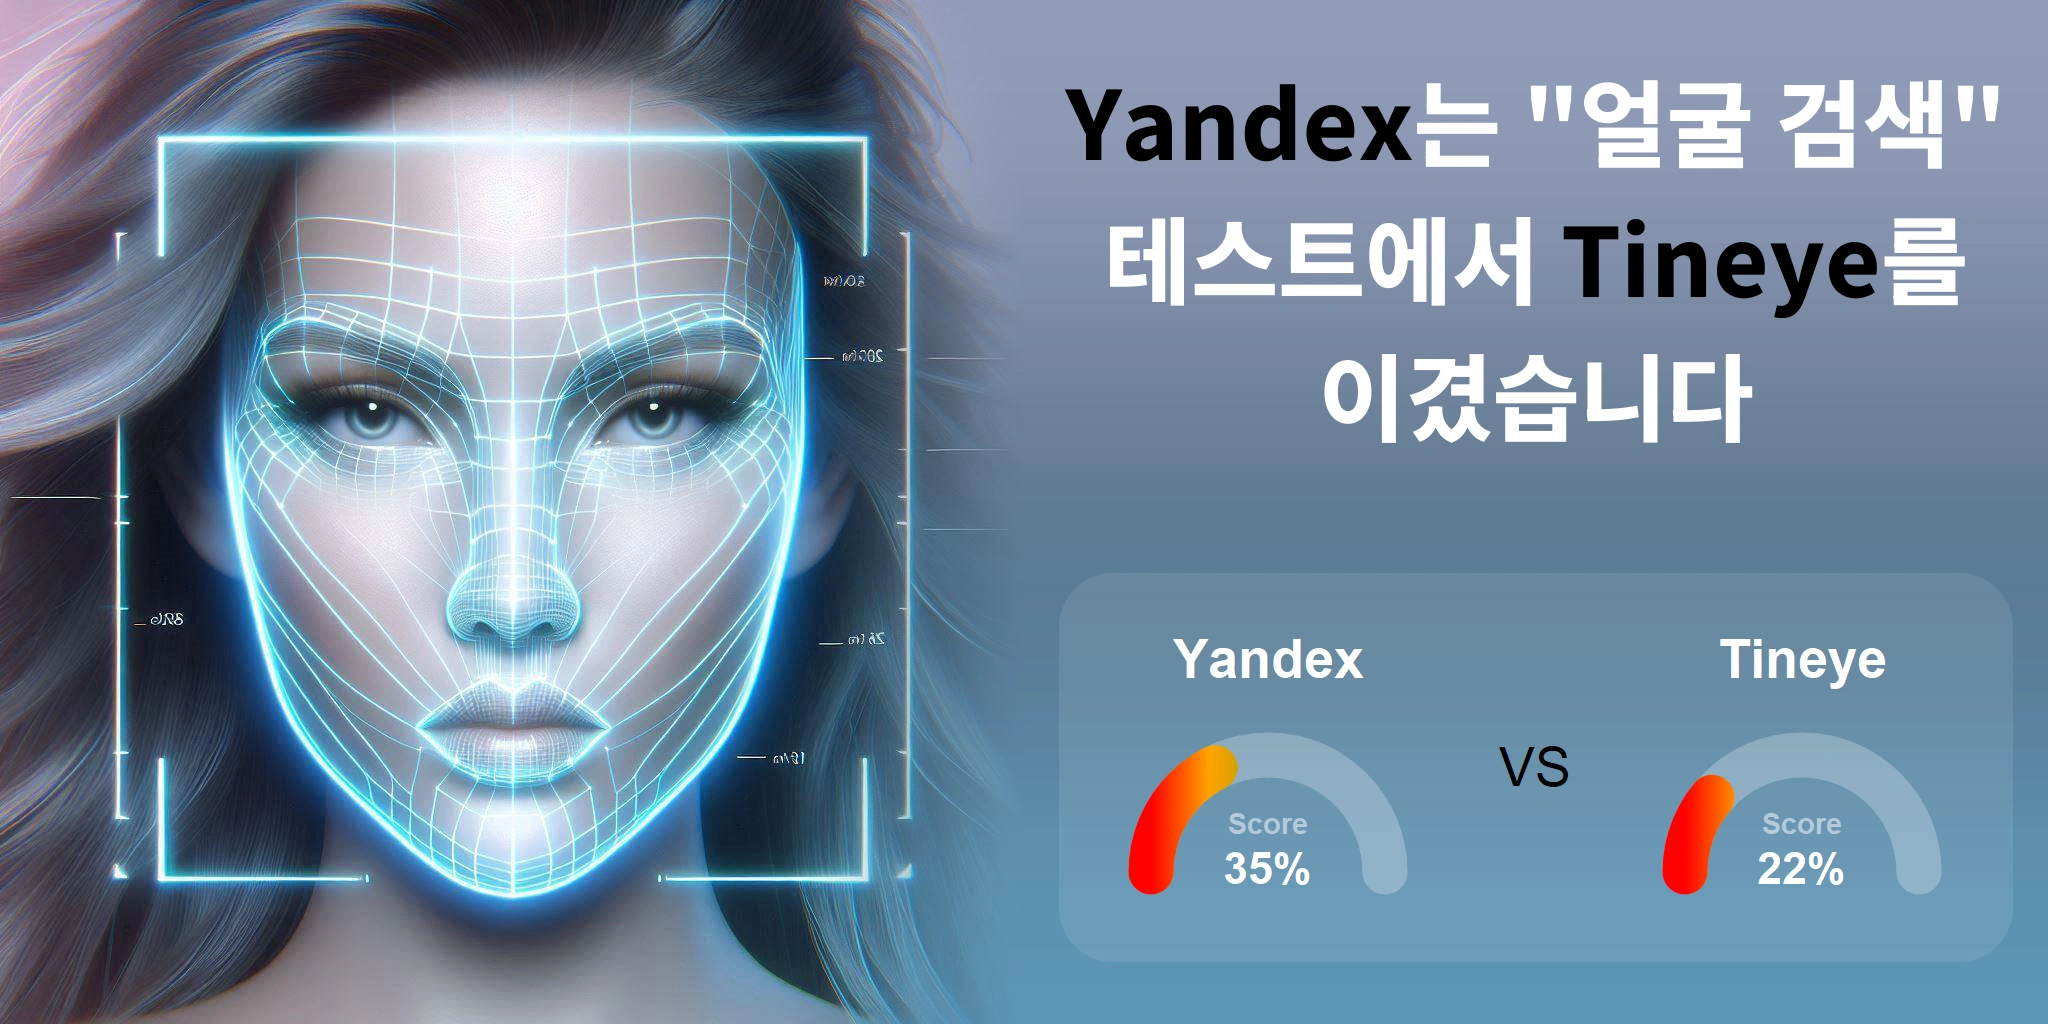 얼굴 검색에 더 좋은 것은 무엇입니까: <br>Tineye 또는 Yandex?